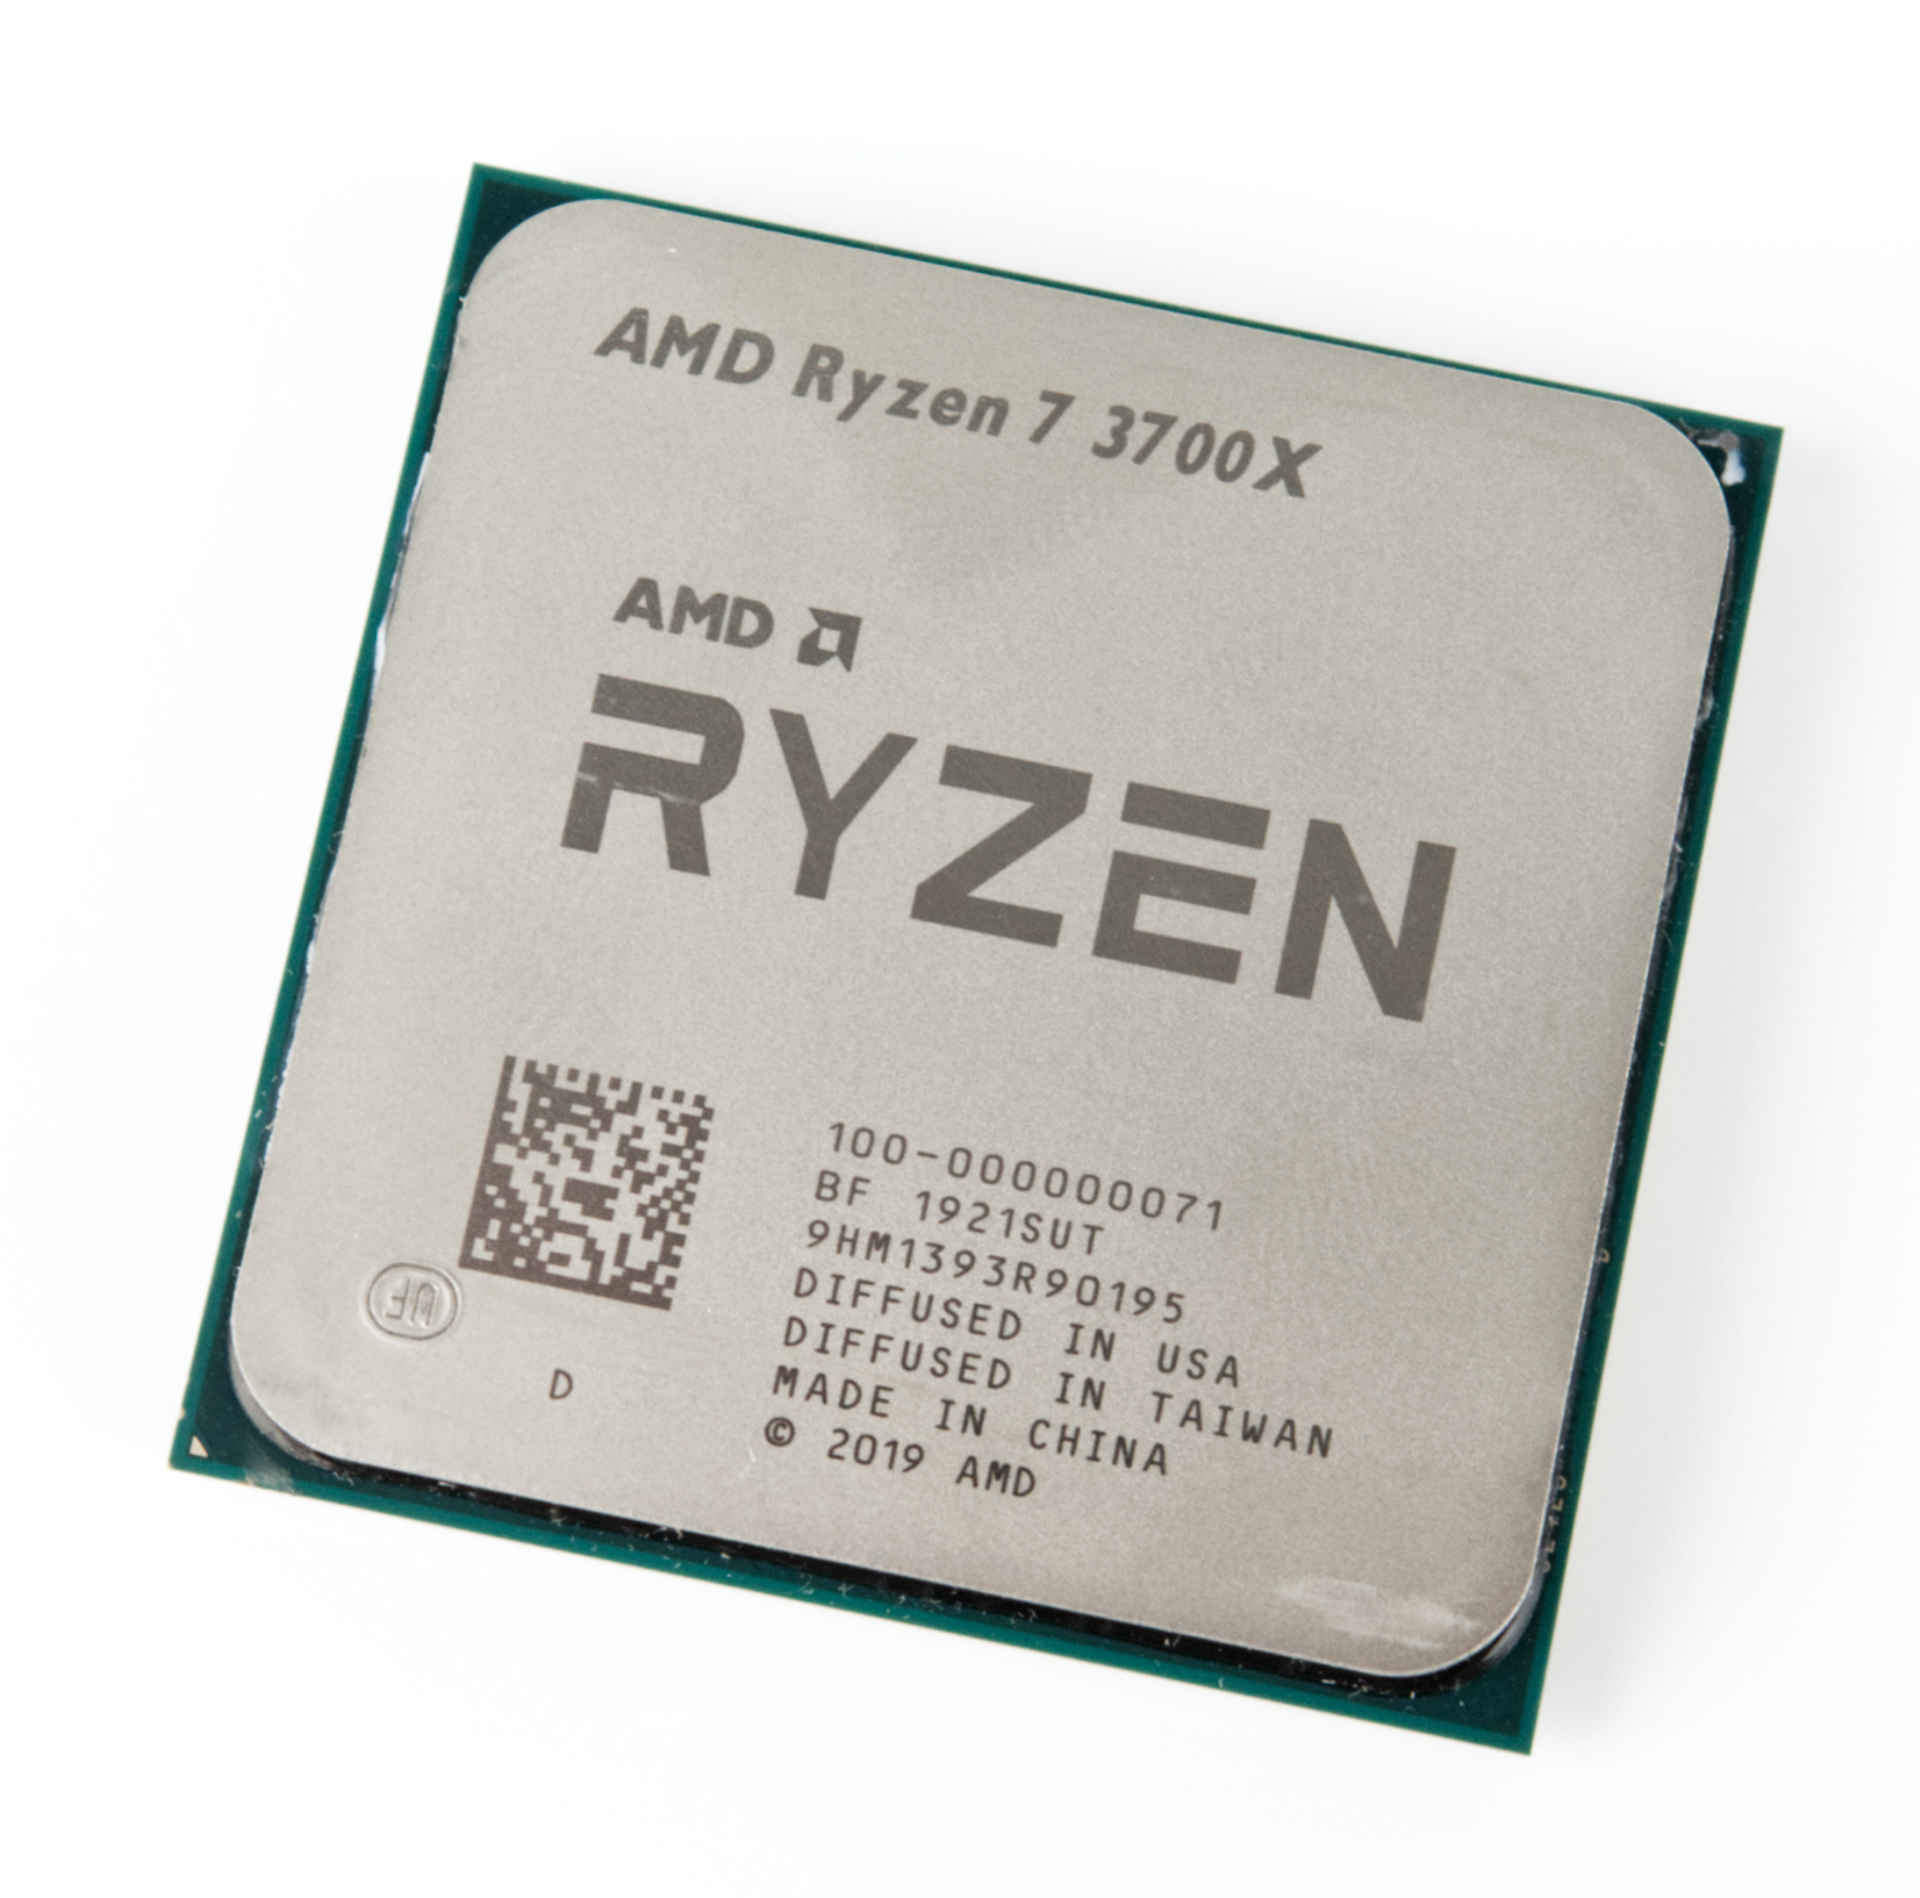 AMD Ryzen 7 3700X und Test 8 16 mit Technik/FAQ Kernen Notebookcheck.com - im Threads